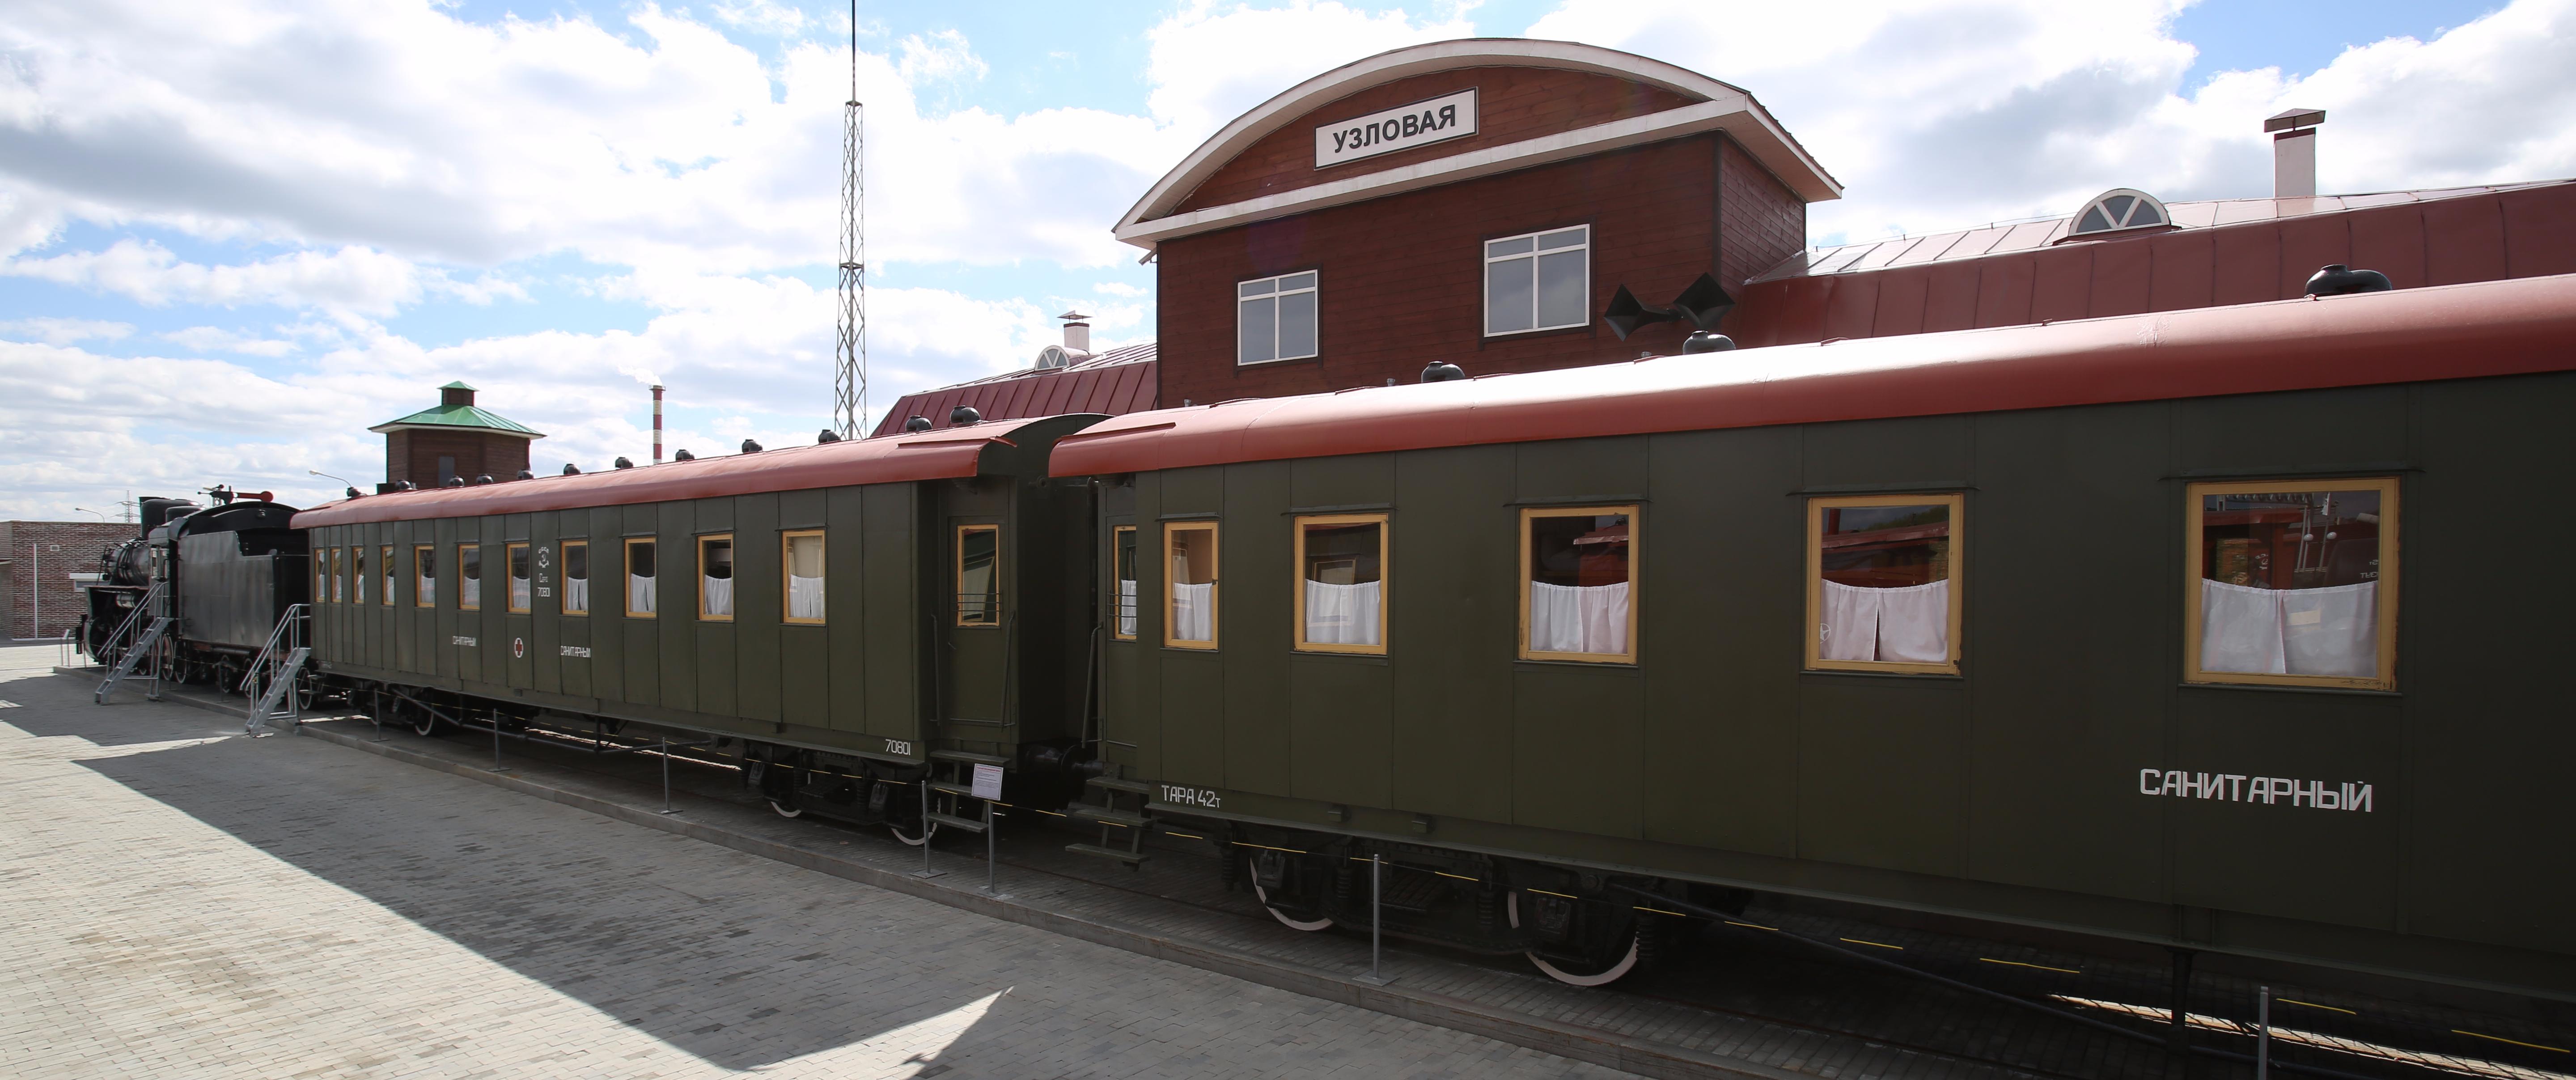 Военно-санитарные поезда в годы Великой Отечественной войны